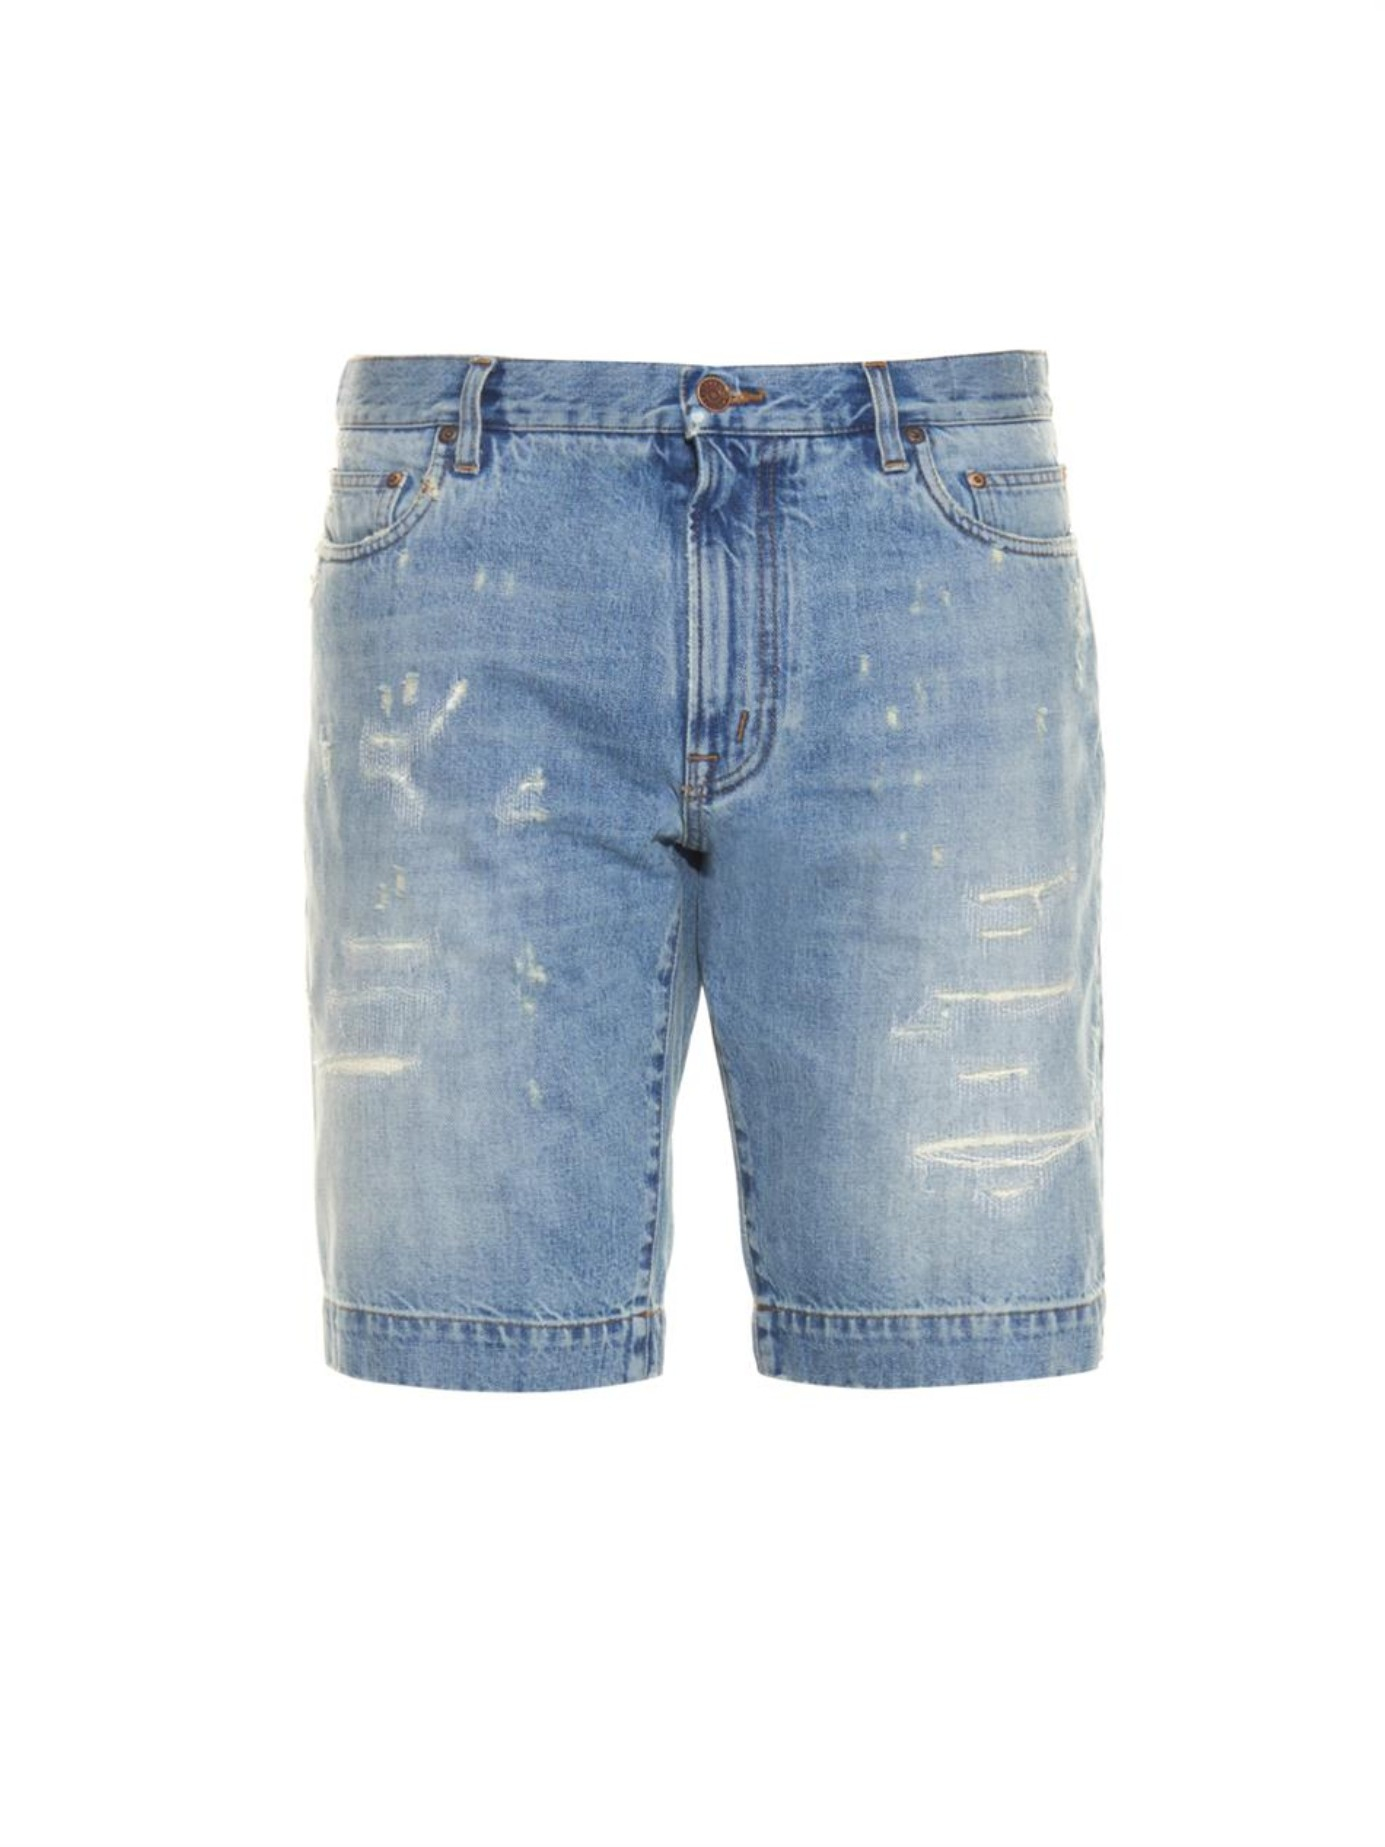 dolce gabbana short jeans